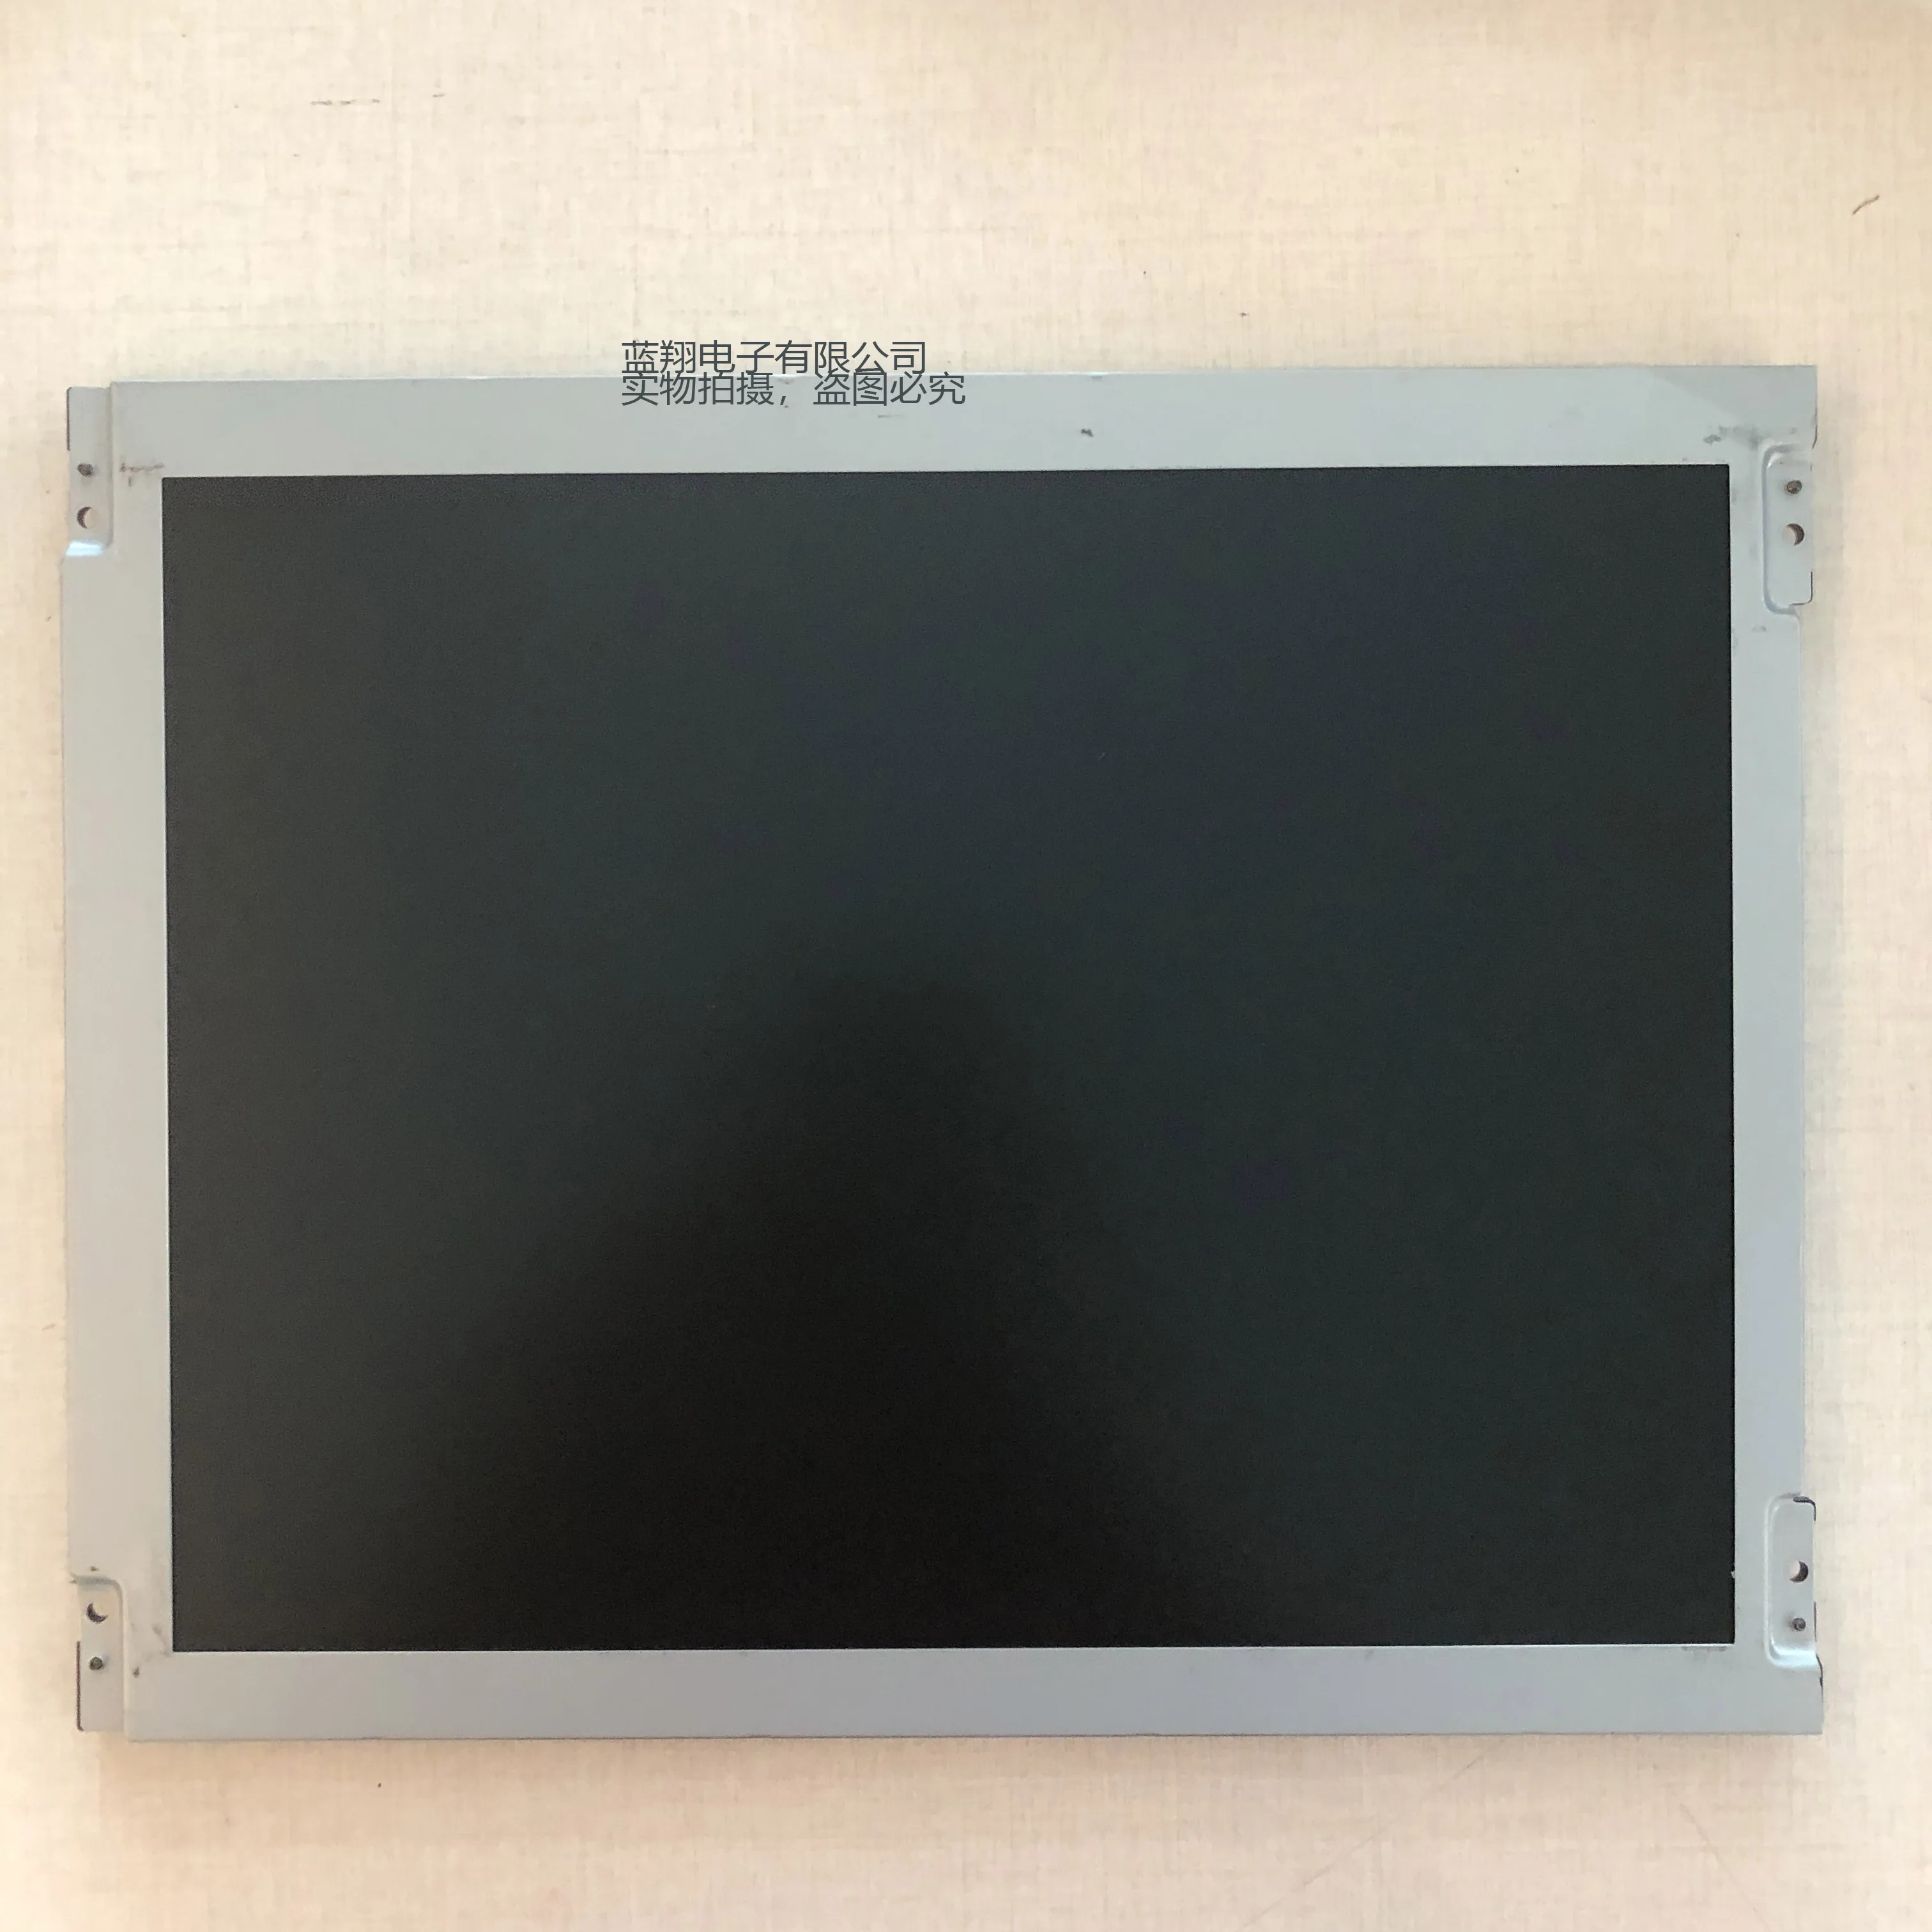 100% original test LCD SCREEN TM121SV-A01 12.1 inch